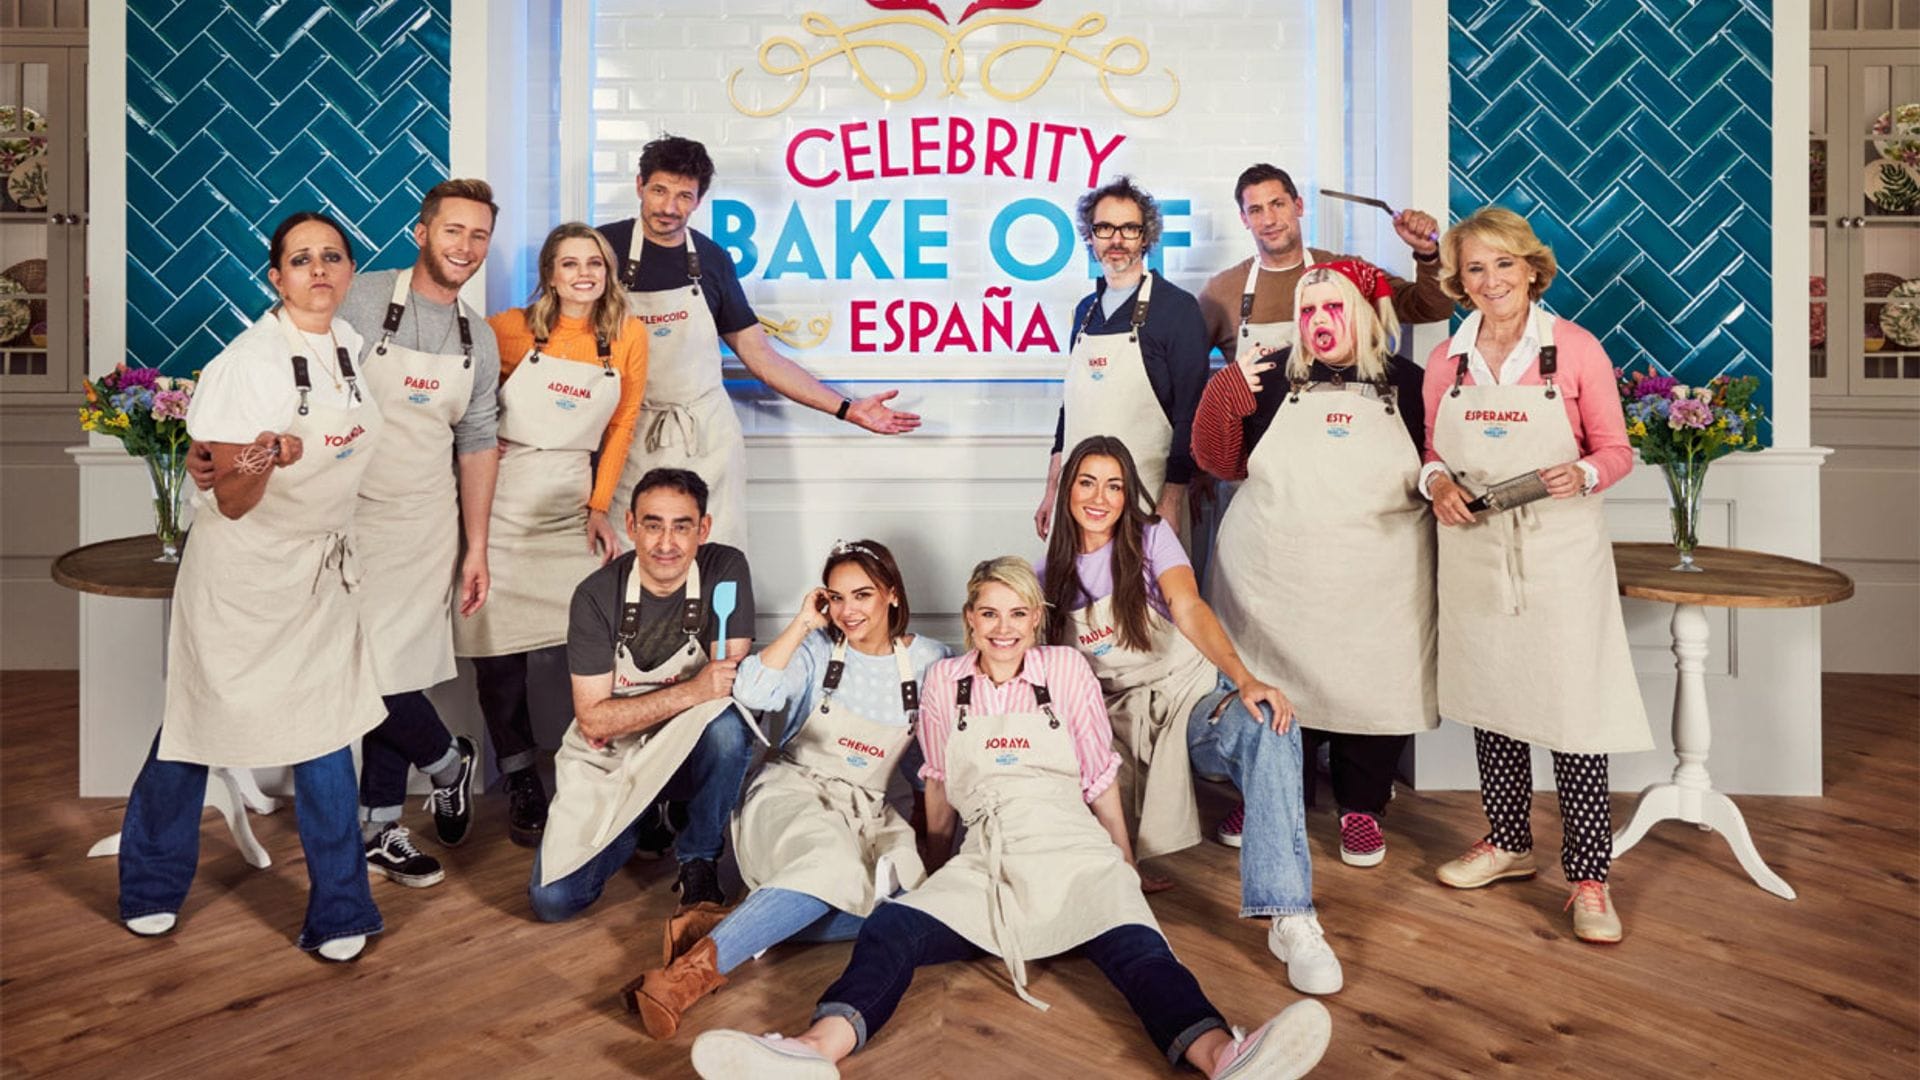 El elenco de 'Celebrity Bake Off España' no deja indiferente a nadie (y la primera foto de familia tampoco)